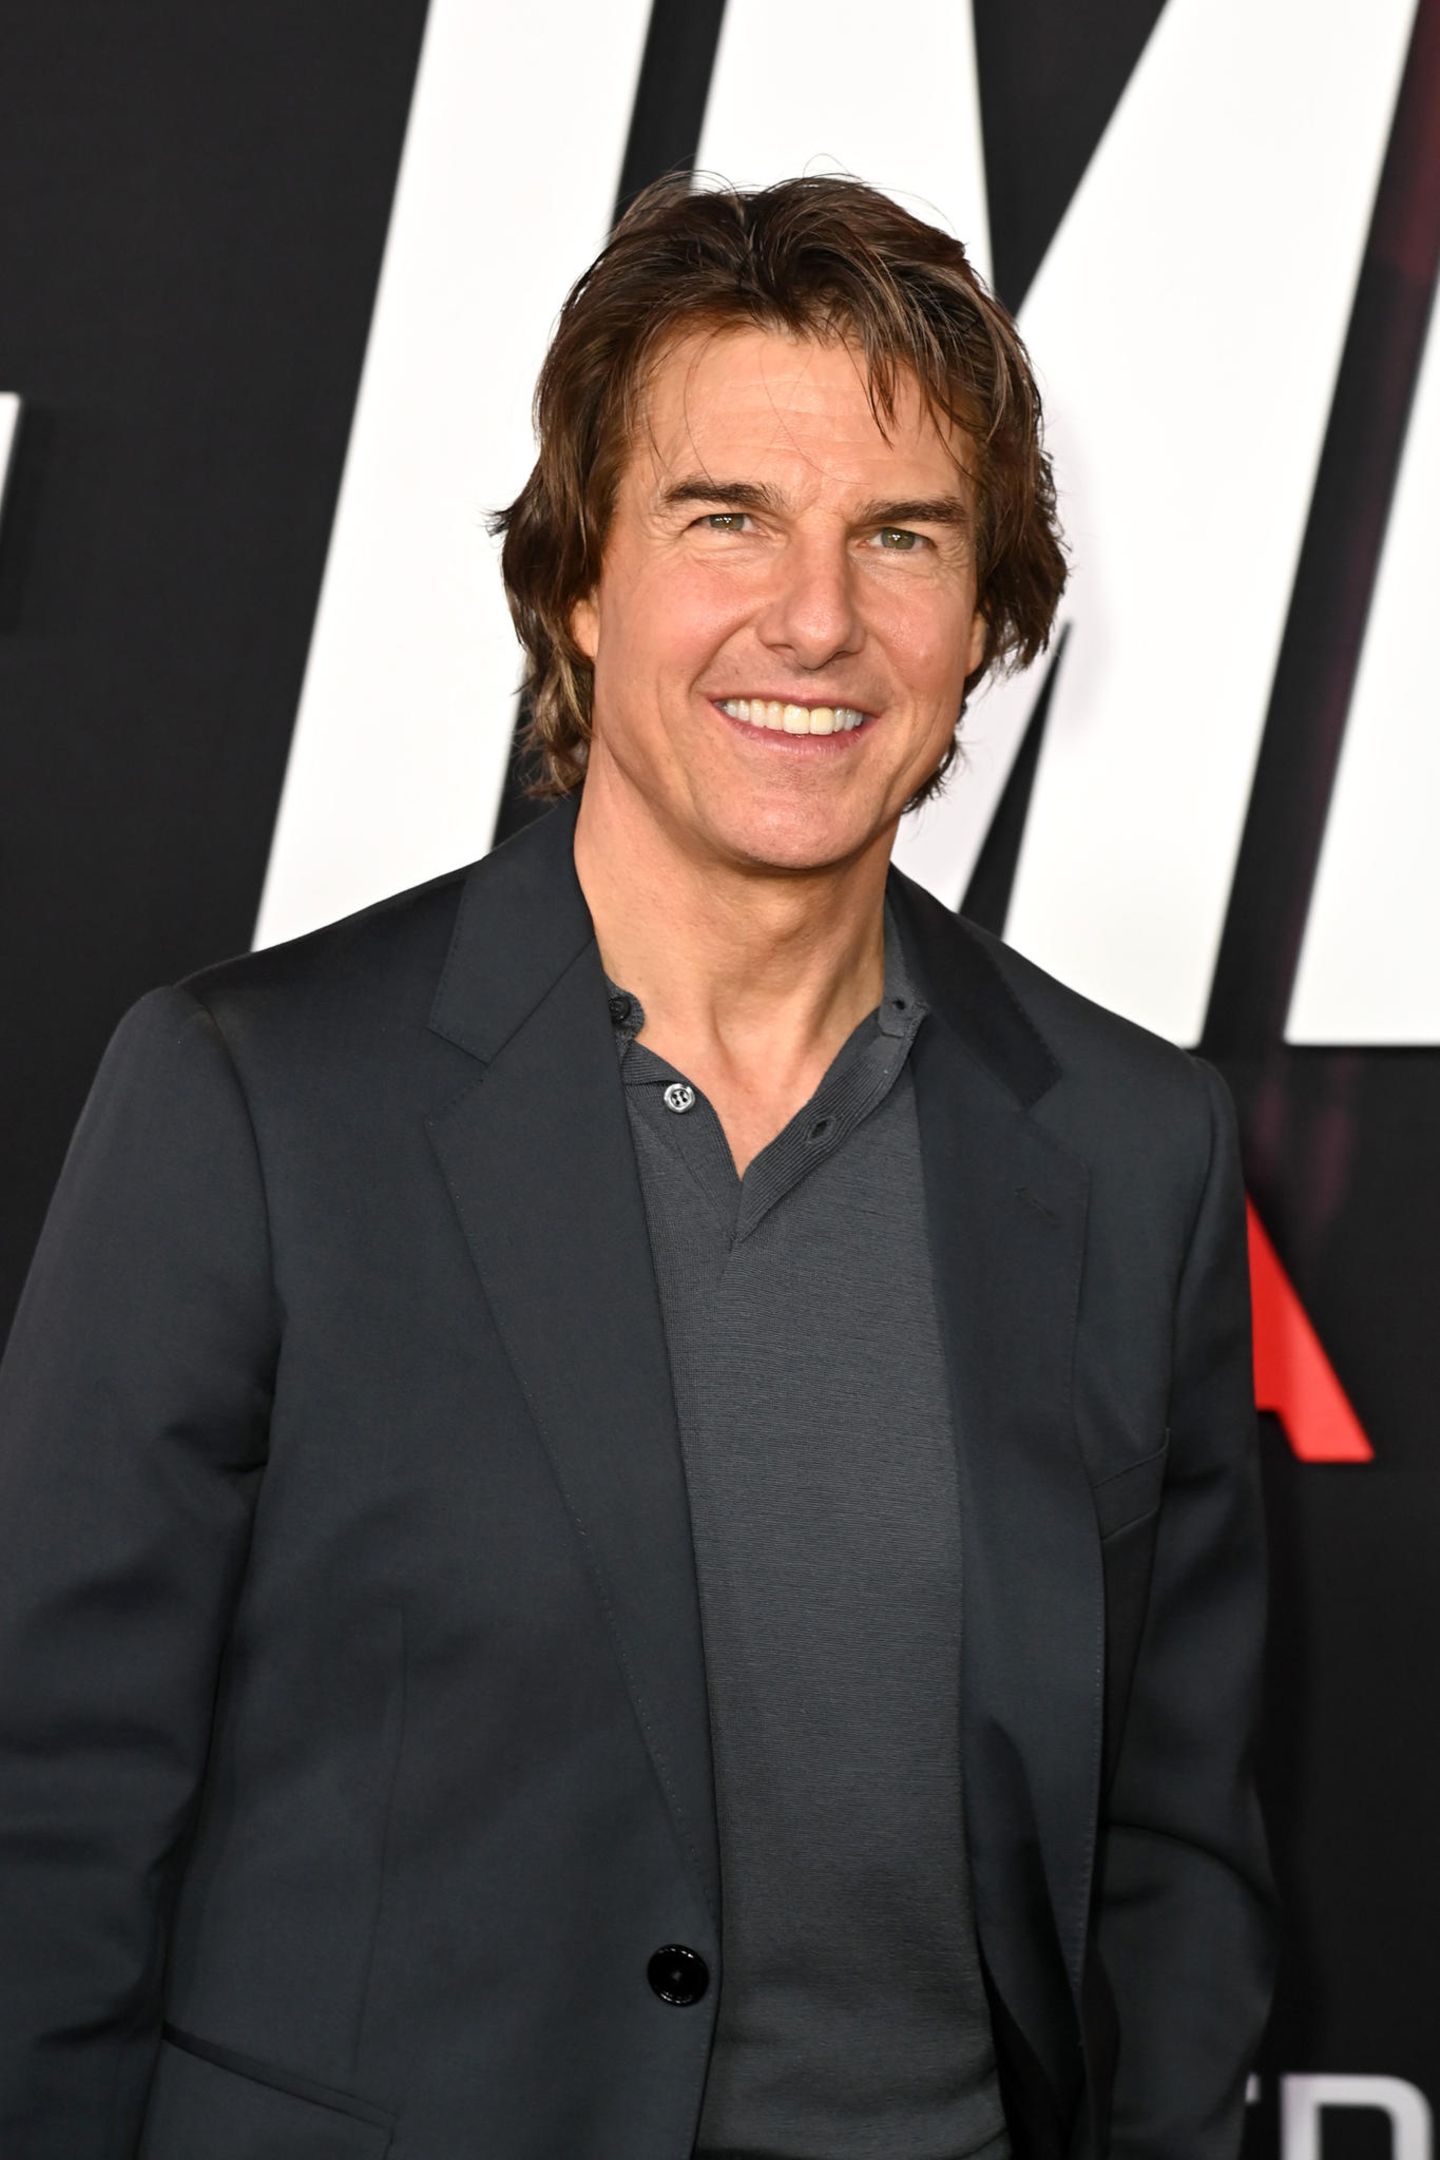 Tom Cruise = Thomas Cruise Mapother IV